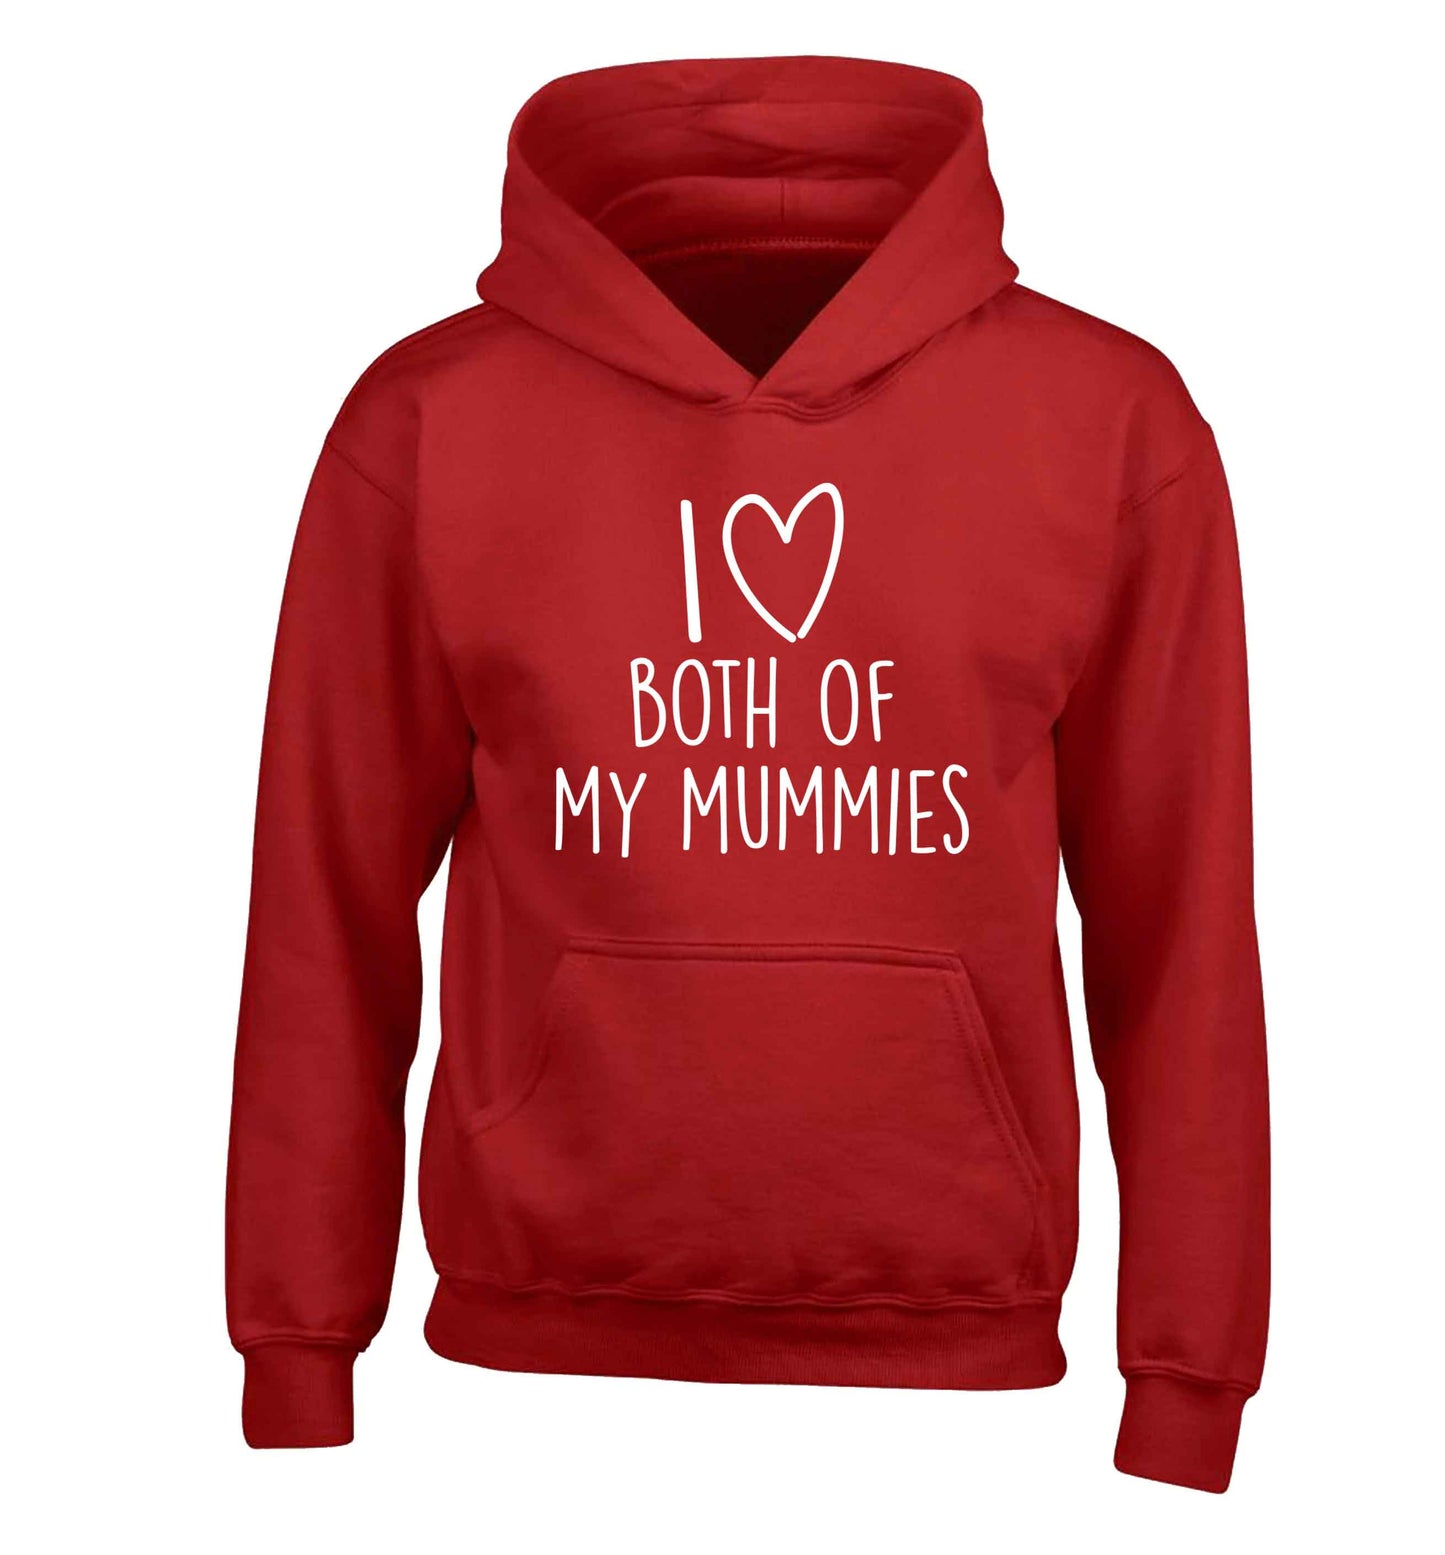 I love both of my mummies children's red hoodie 12-13 Years